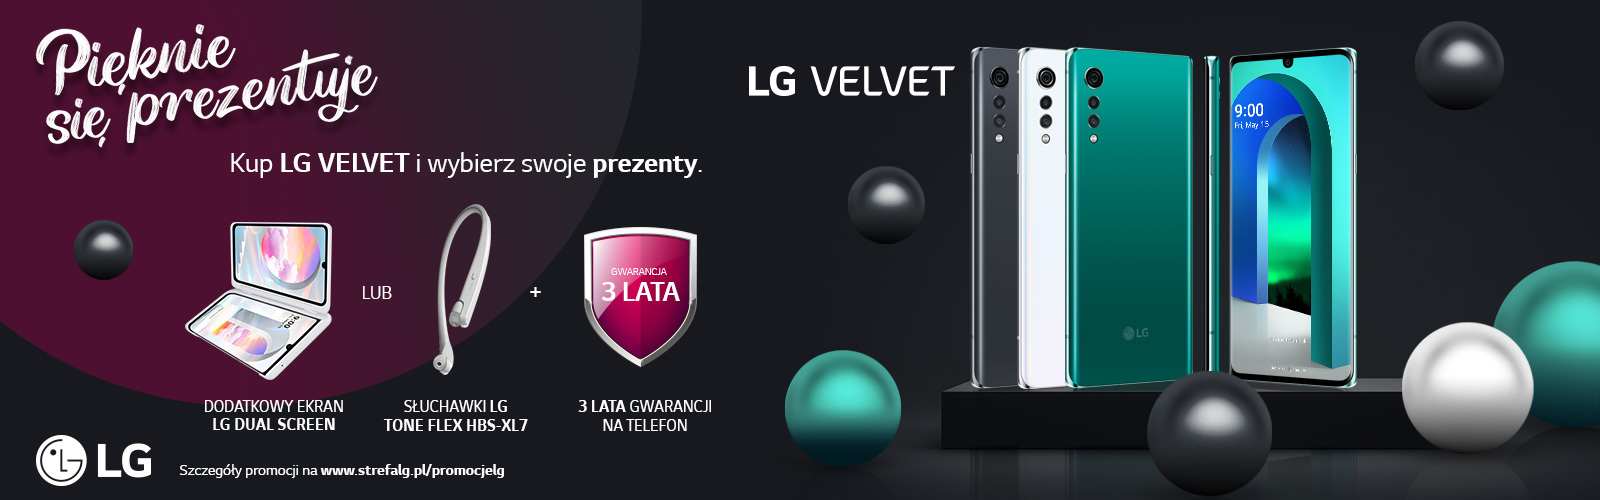 LG Velvet